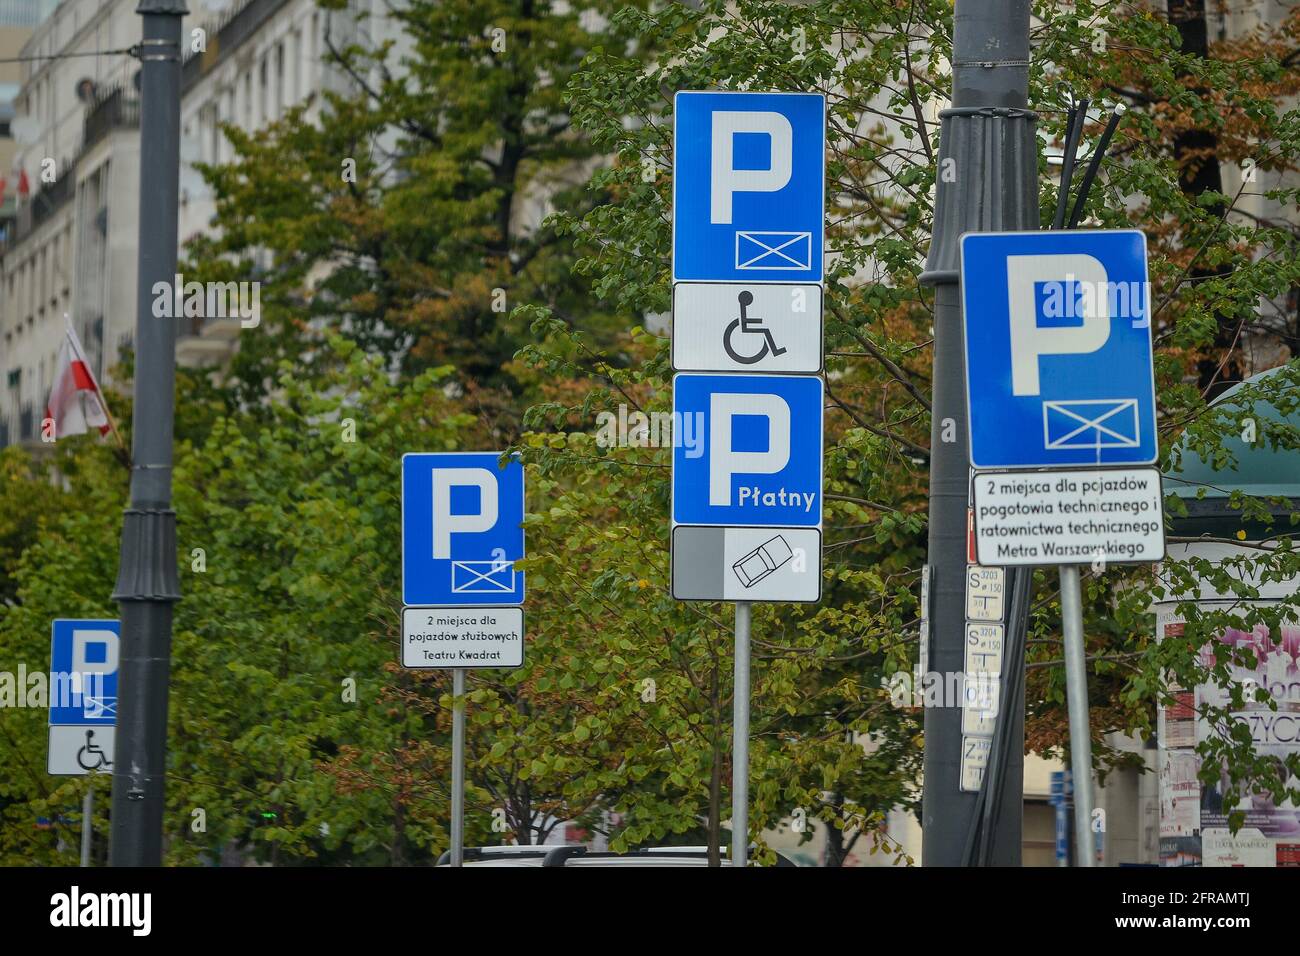 VARSOVIE. POLOGNE - AOÛT 2015 : signalisation routière, stationnement pour voitures, stationnement pour personnes handicapées. Sur fond d'arbres verts. Photo de haute qualité Banque D'Images